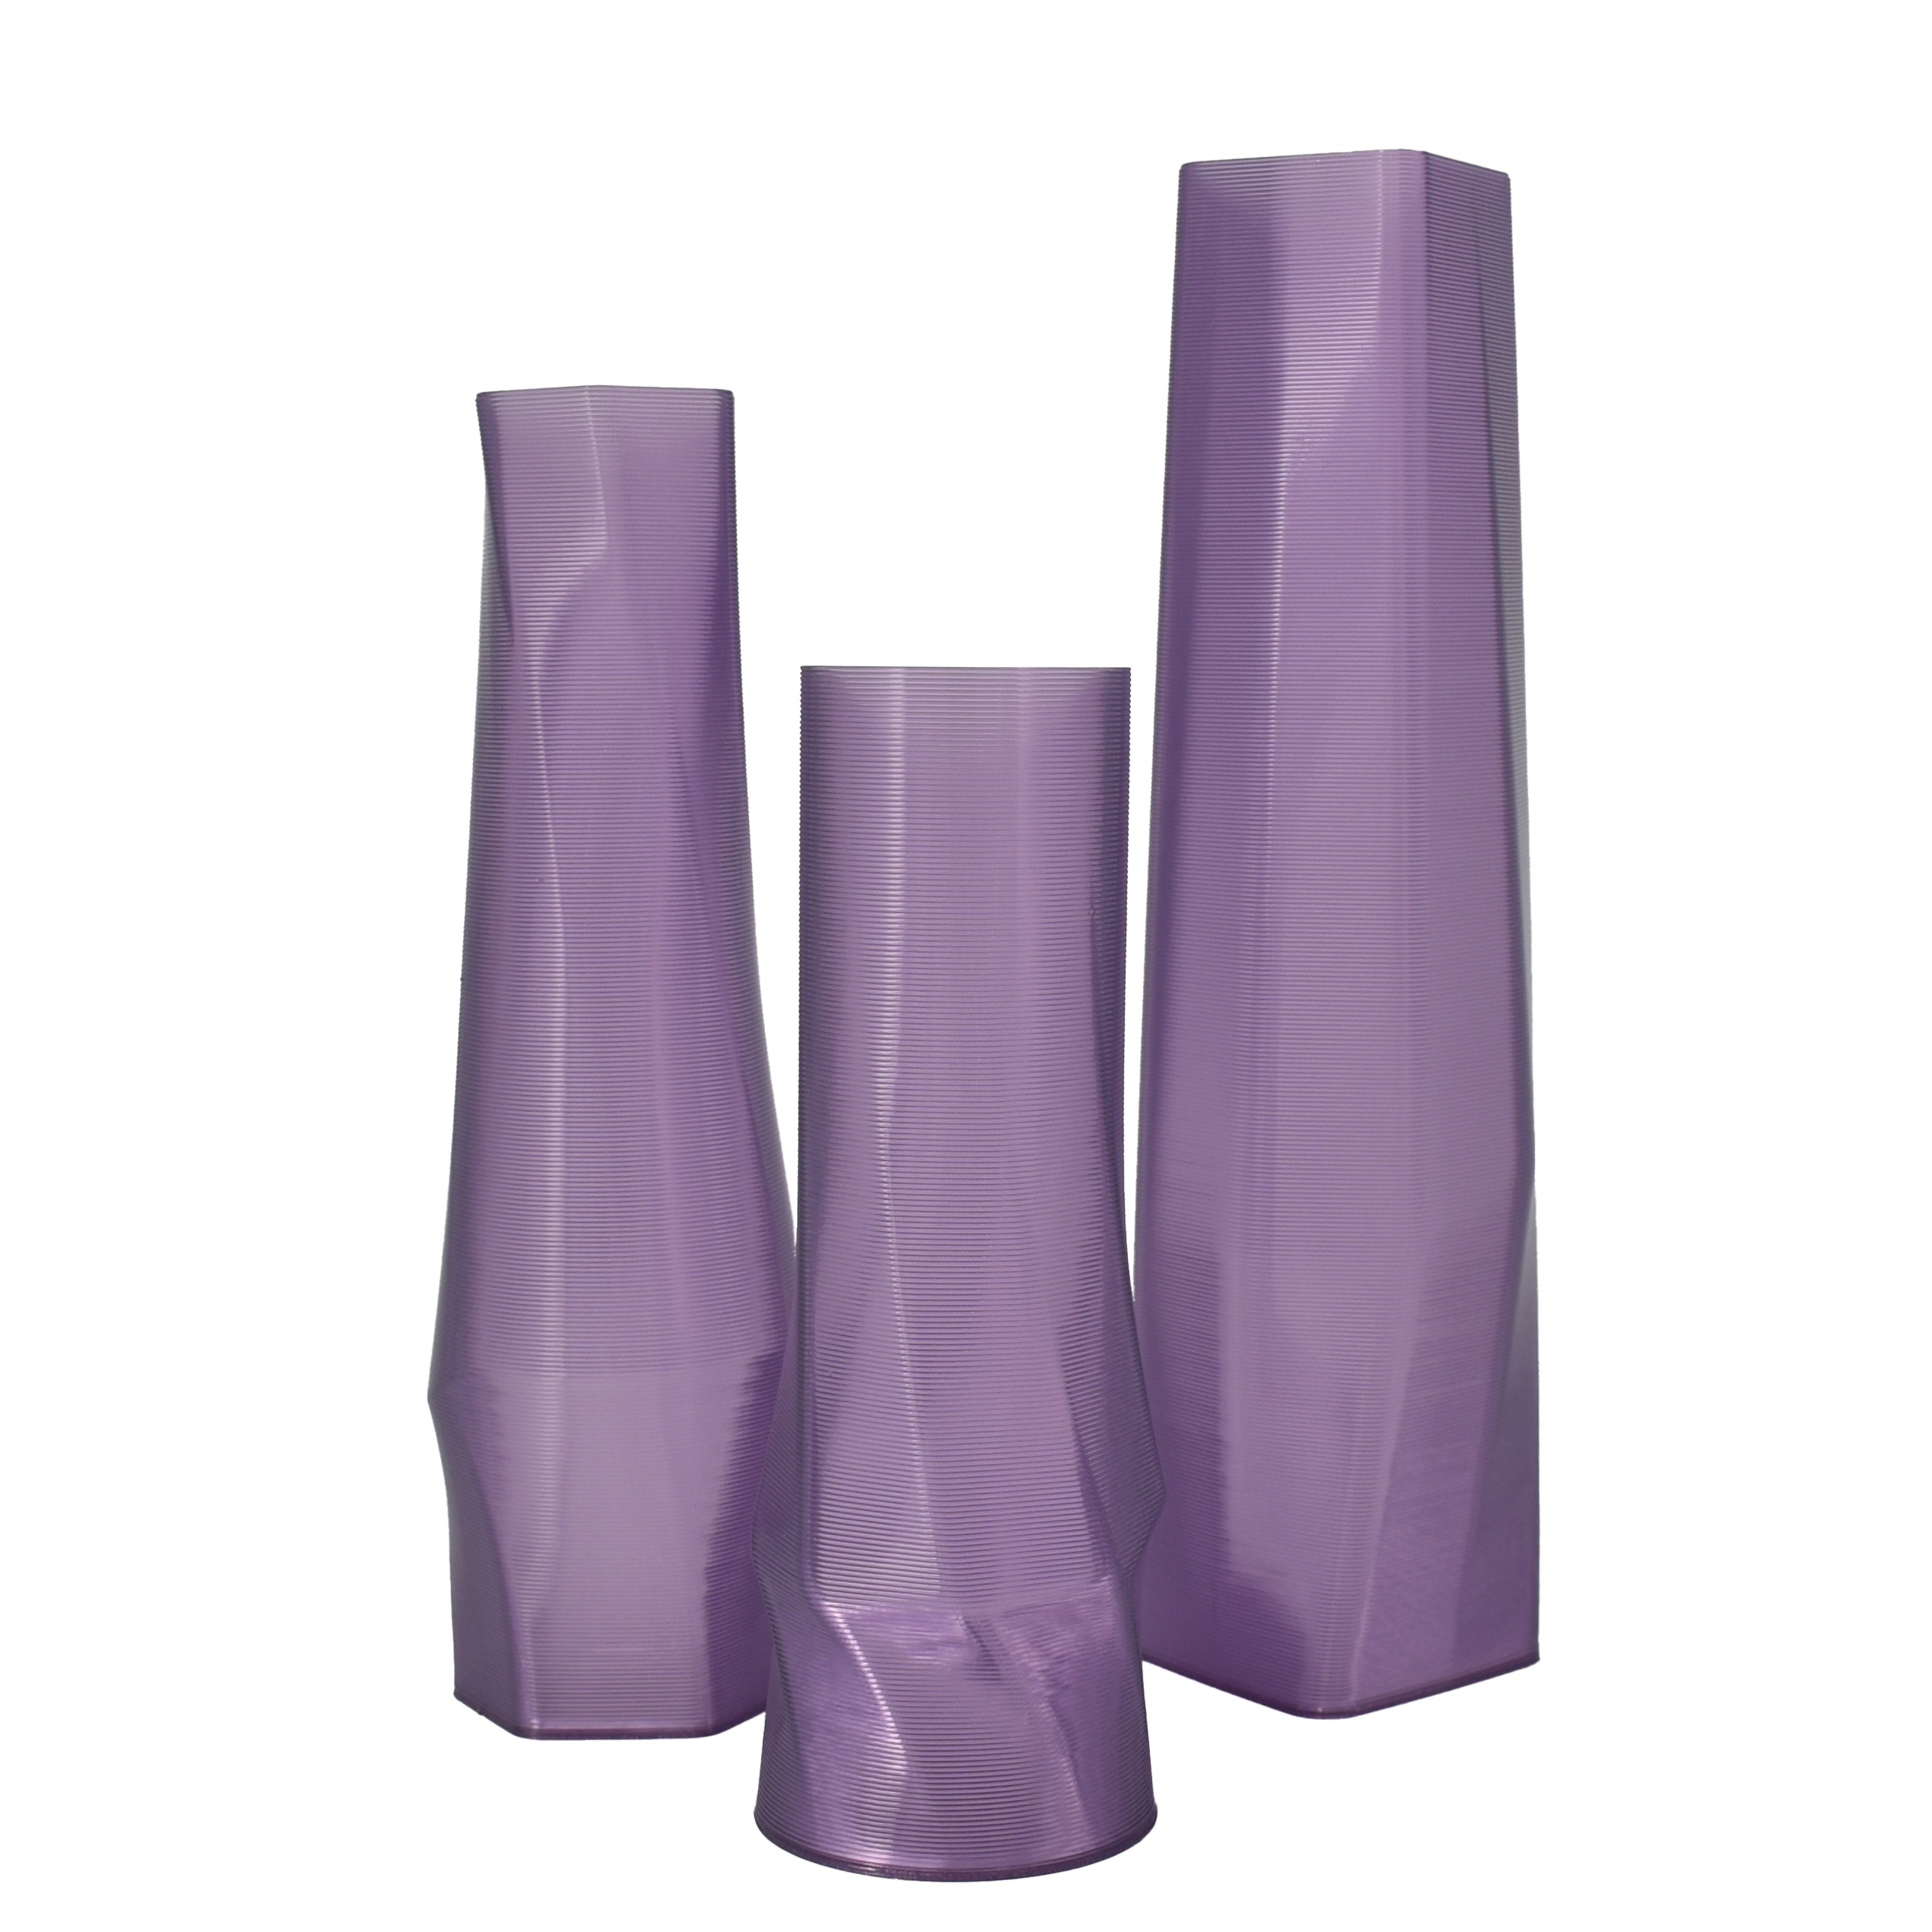 Shapes - Decorations Dekovase geometrio. (deco), 3D Vasen, 3er Set, 3D Dekovase, 100% 3D-Druck (3er Spar-Set, 3 Vasen in verschiedenen Größen), Durchsichtig; Leichte Struktur innerhalb des Materials (Rillung) Lila